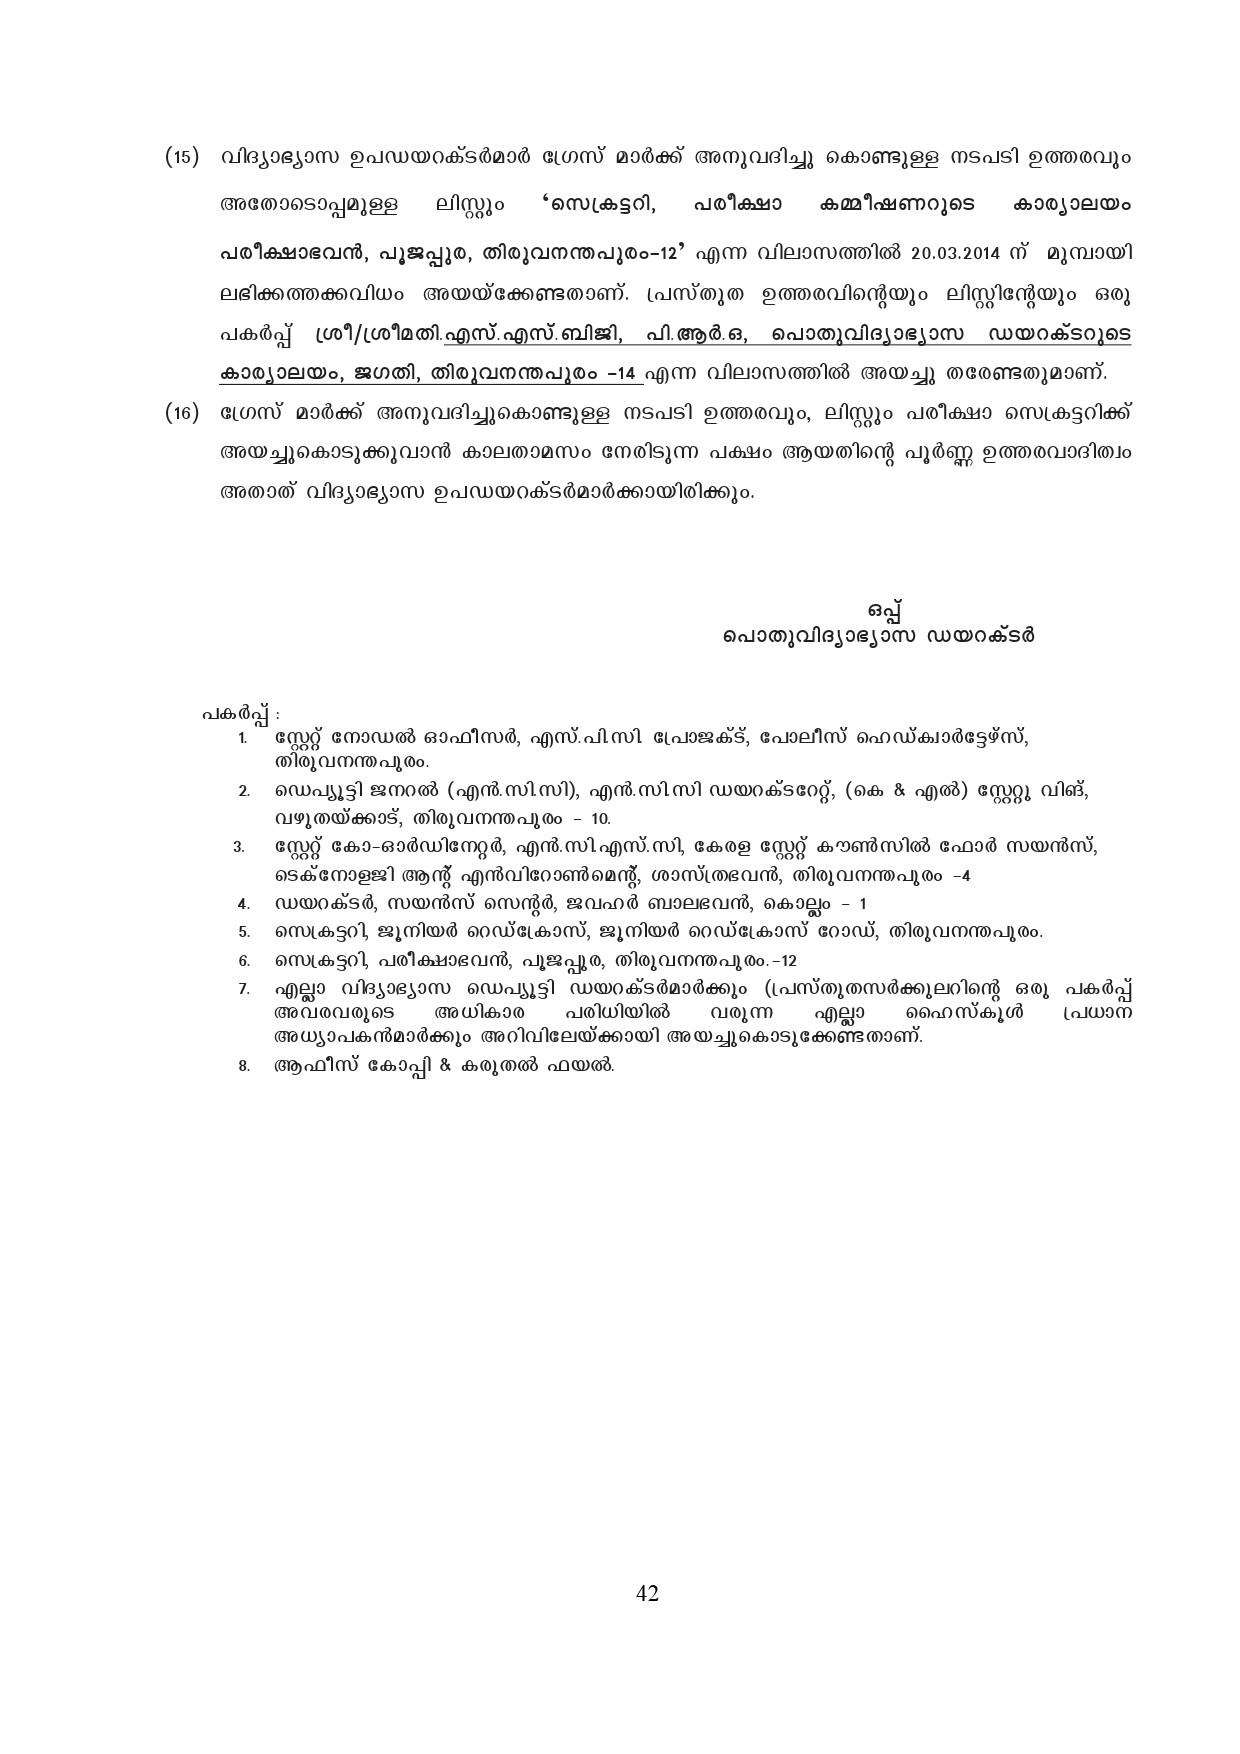 Kerala SSLC Exam Result 2019 - Notification Image 42